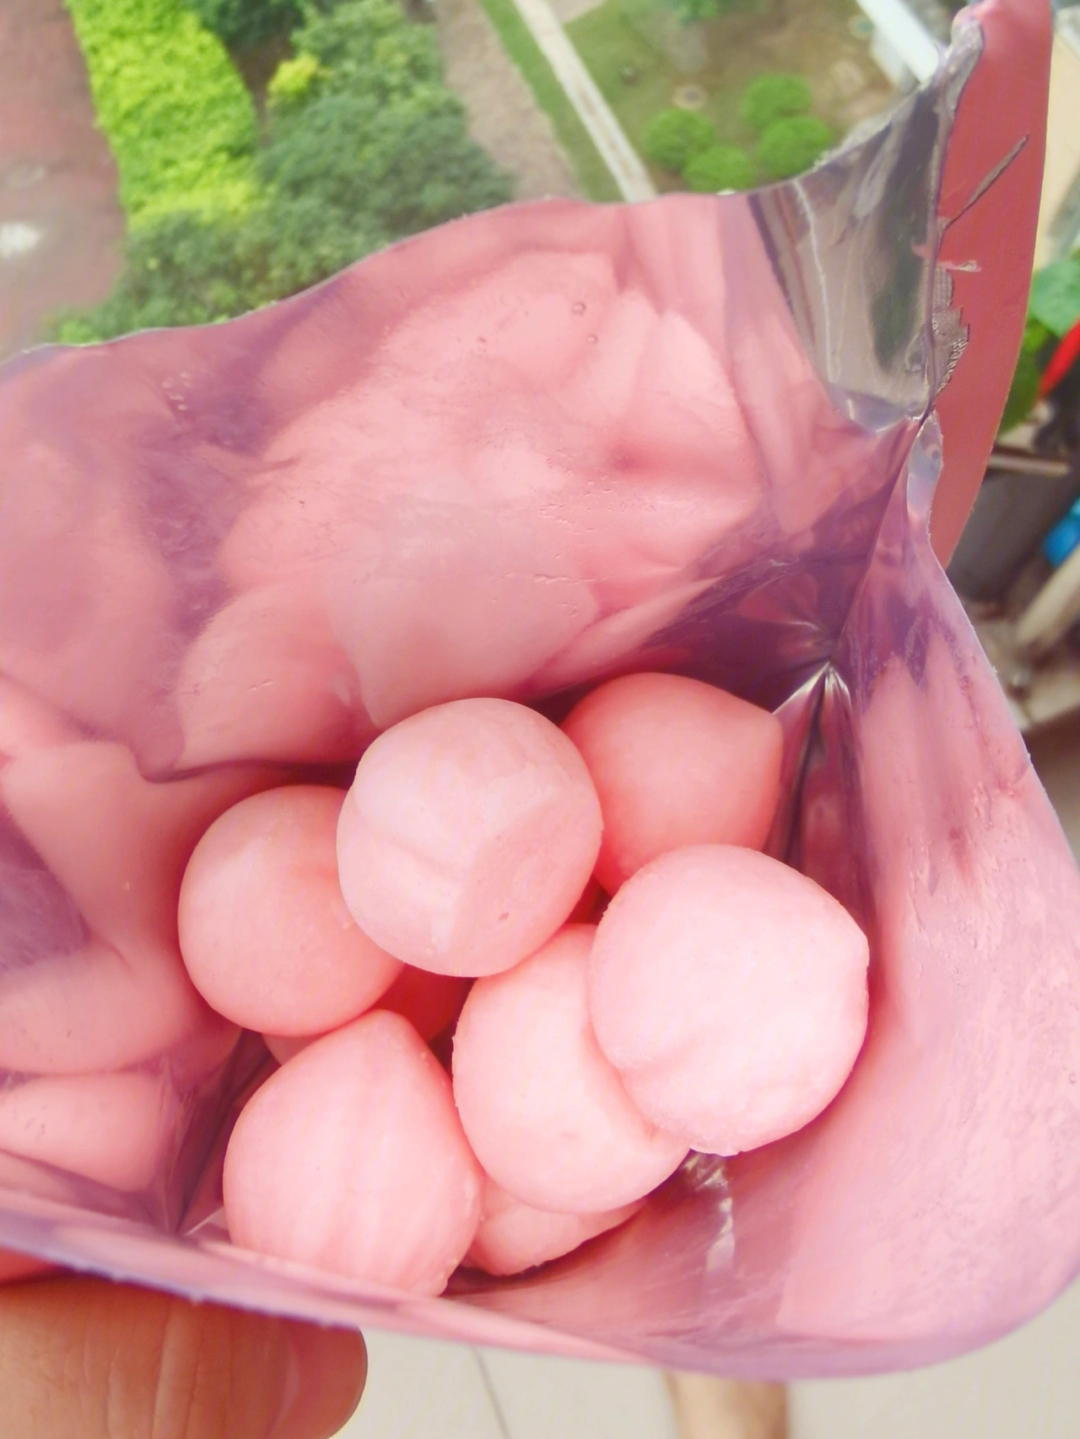 过的mihato白桃冰冰~这个屁桃冰球真的太可爱了,形状像个粉色的小pp